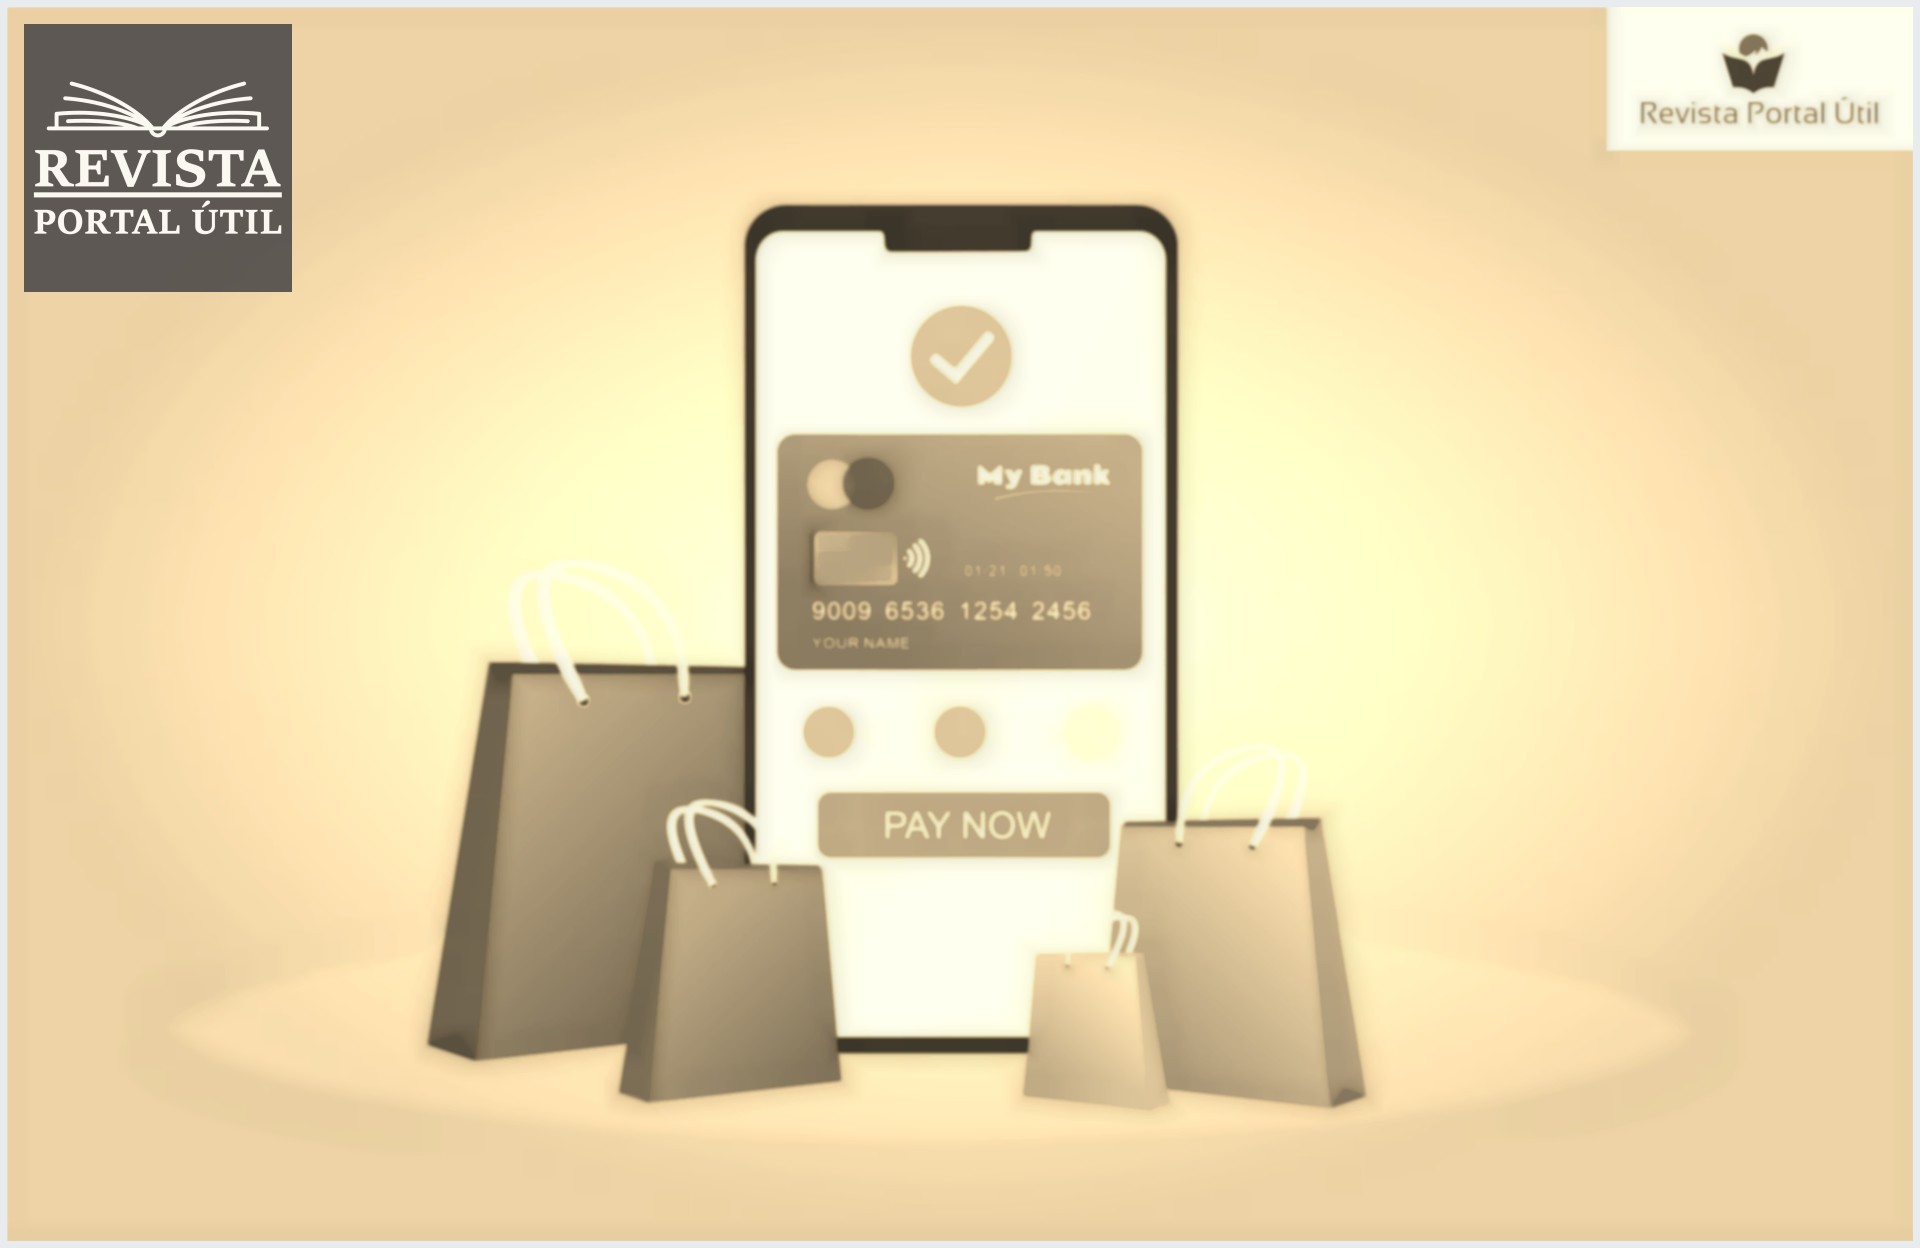 Compra online com cartão de crédito